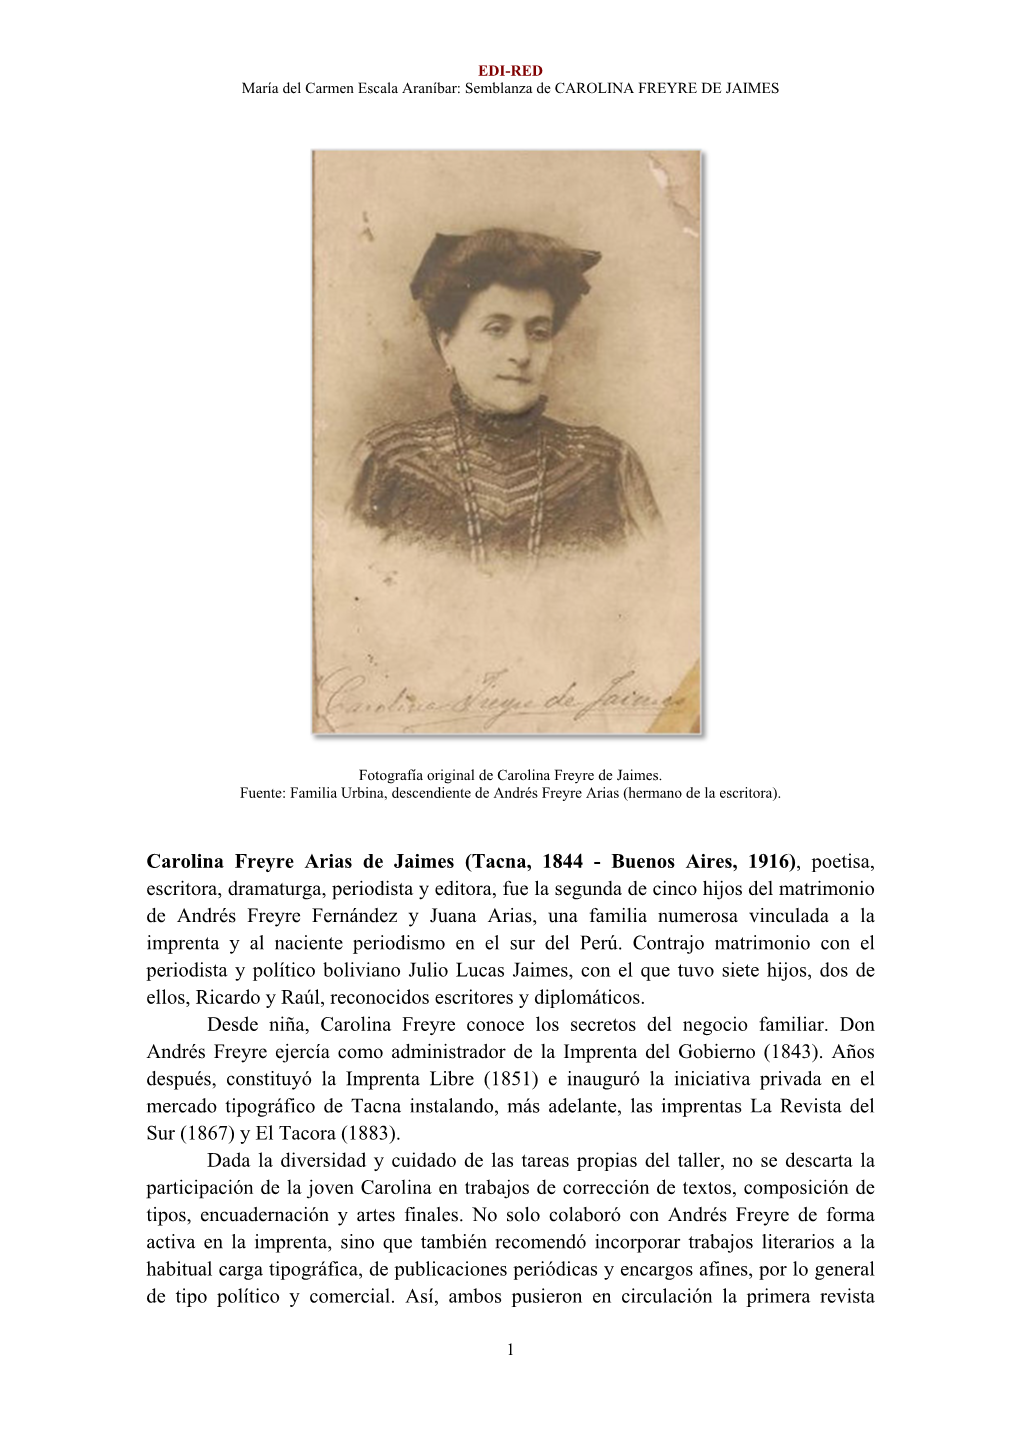 Carolina Freyre Arias De Jaimes (Tacna, 1844